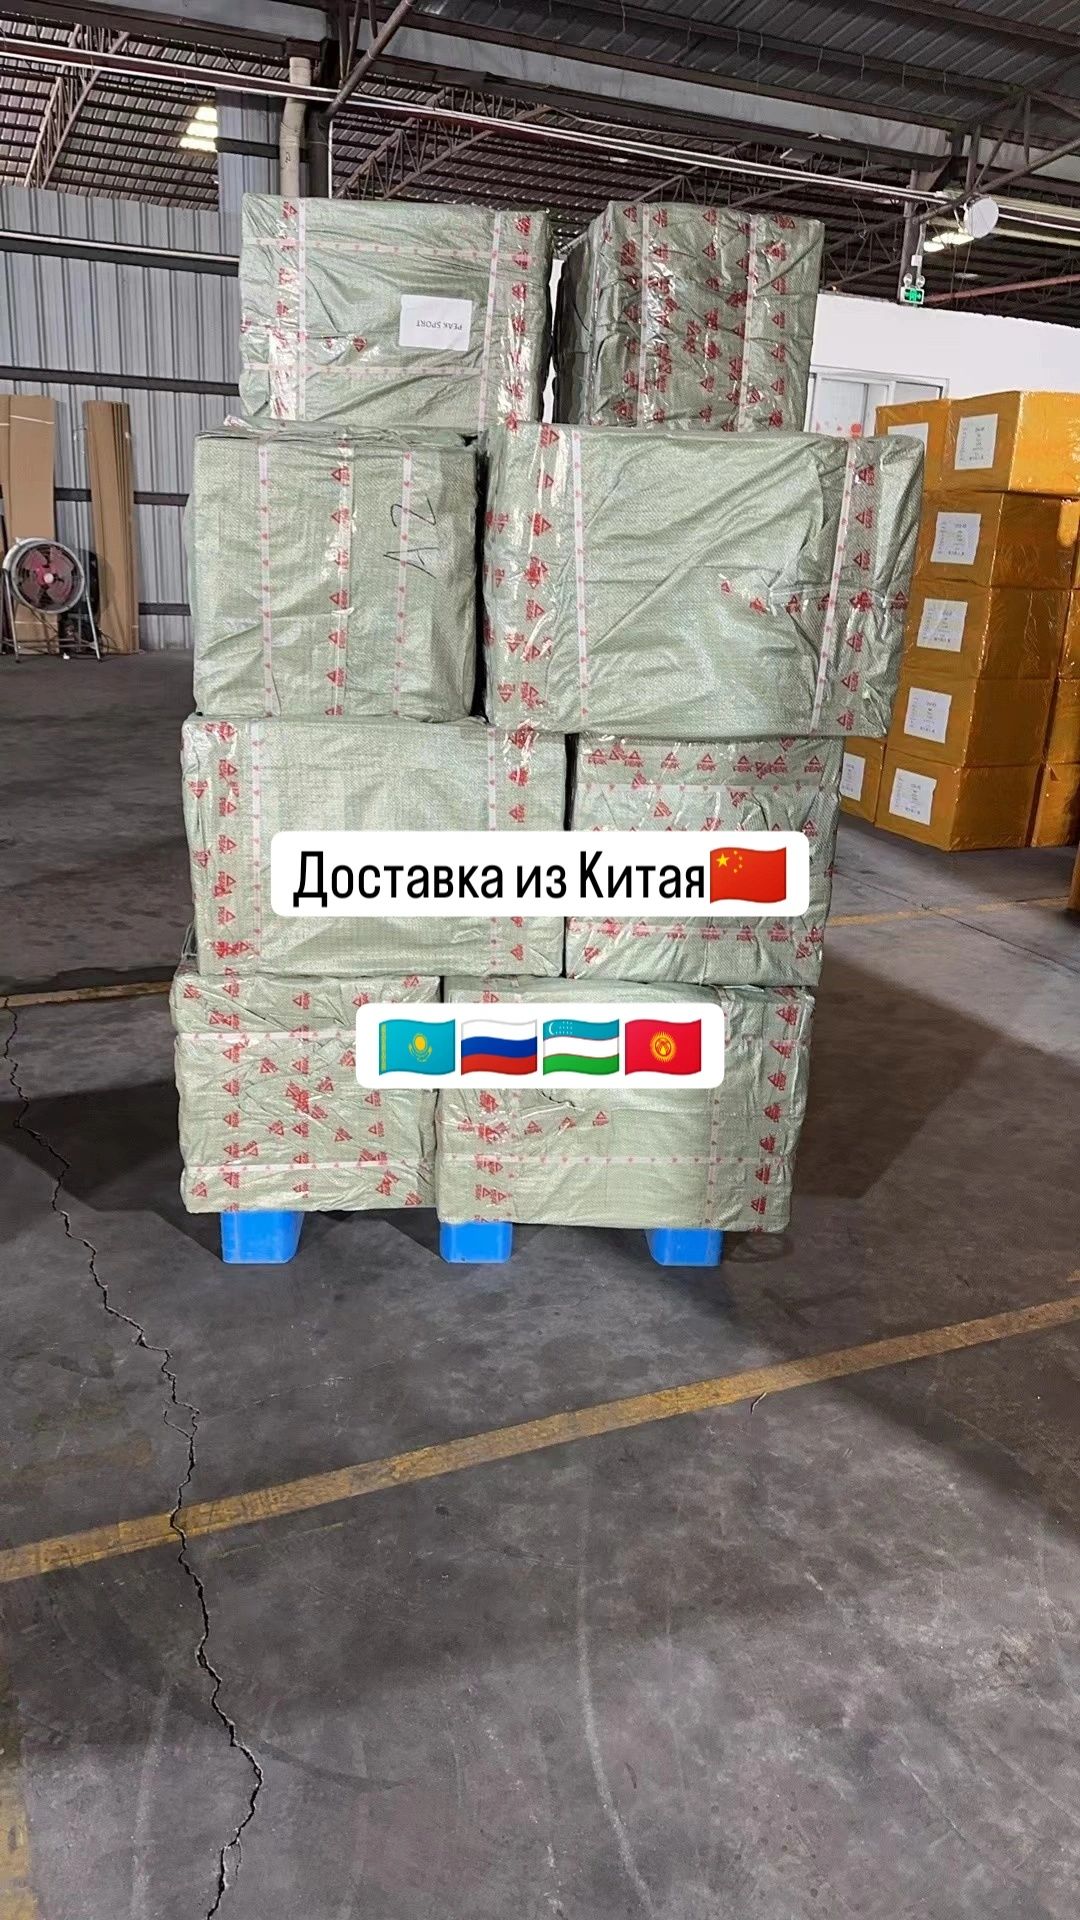 Доставка товаров из Китая, Карго, логистика, грузоперевозки официально